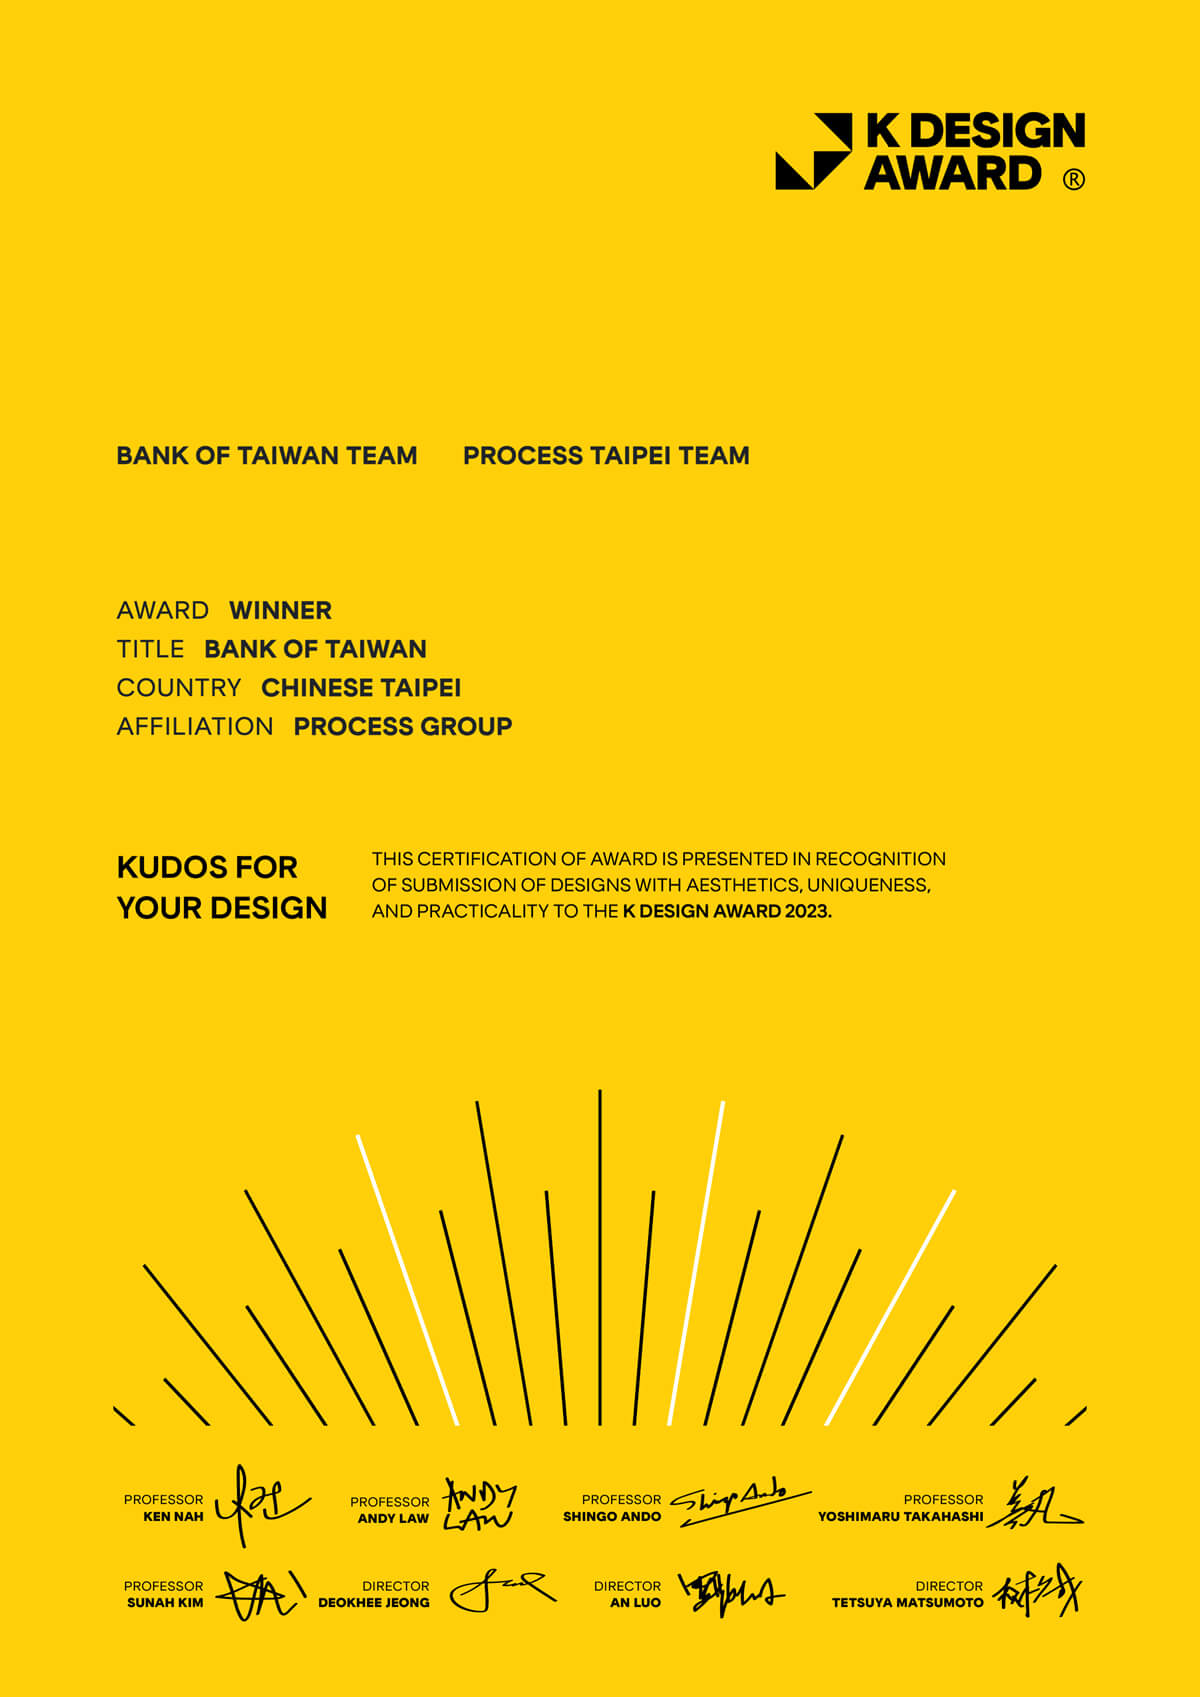 臺灣銀行榮獲亞洲三大設計獎之一的韓國 K-Design Award 設計大獎的肯定。